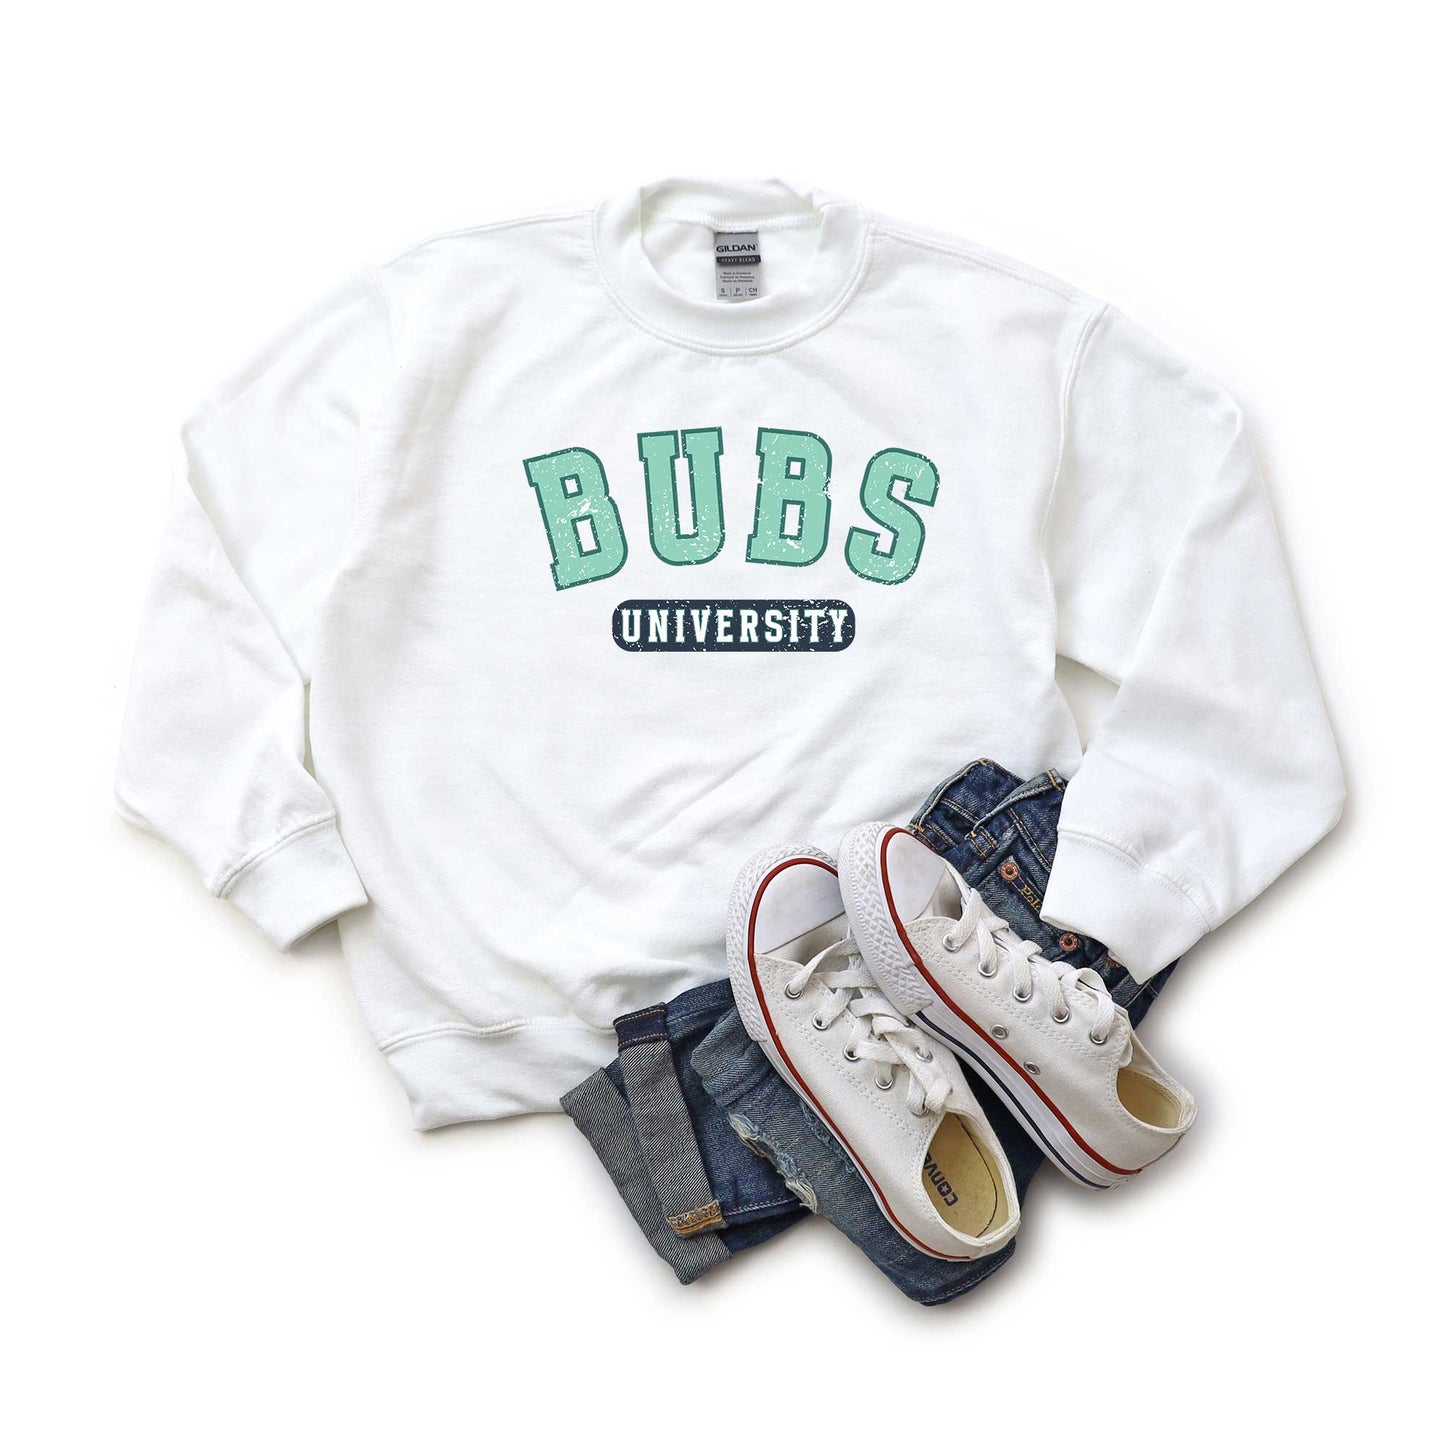 Bubs University | Youth Graphic Sweatshirt